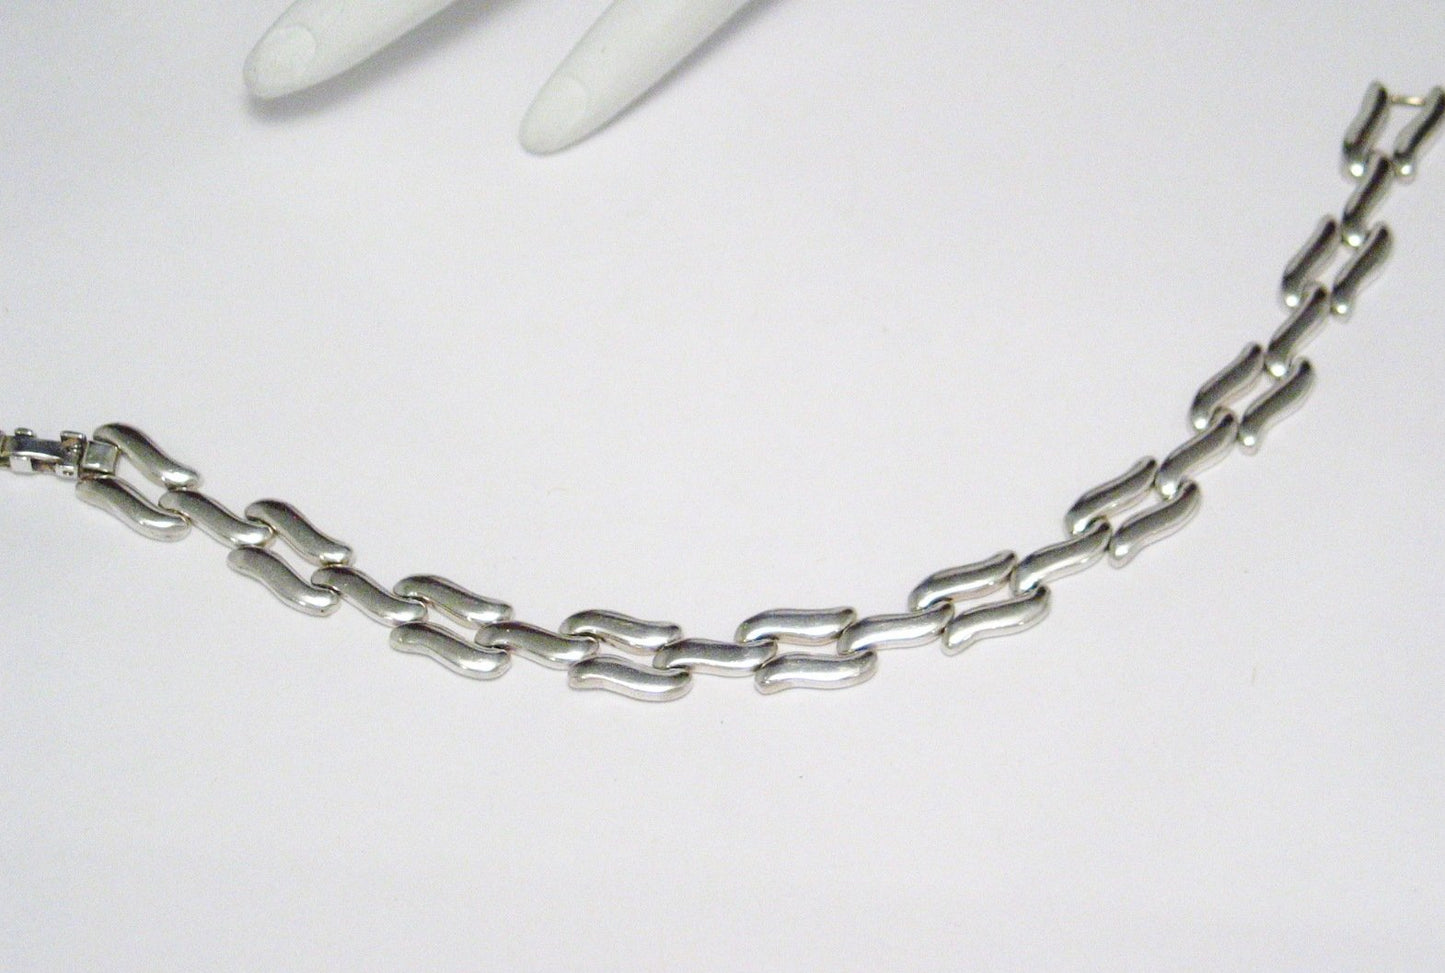 Silver Bracelets | Fancy Wavy Link Design Bracelet 7" | Mens Womens Estate Jewelry